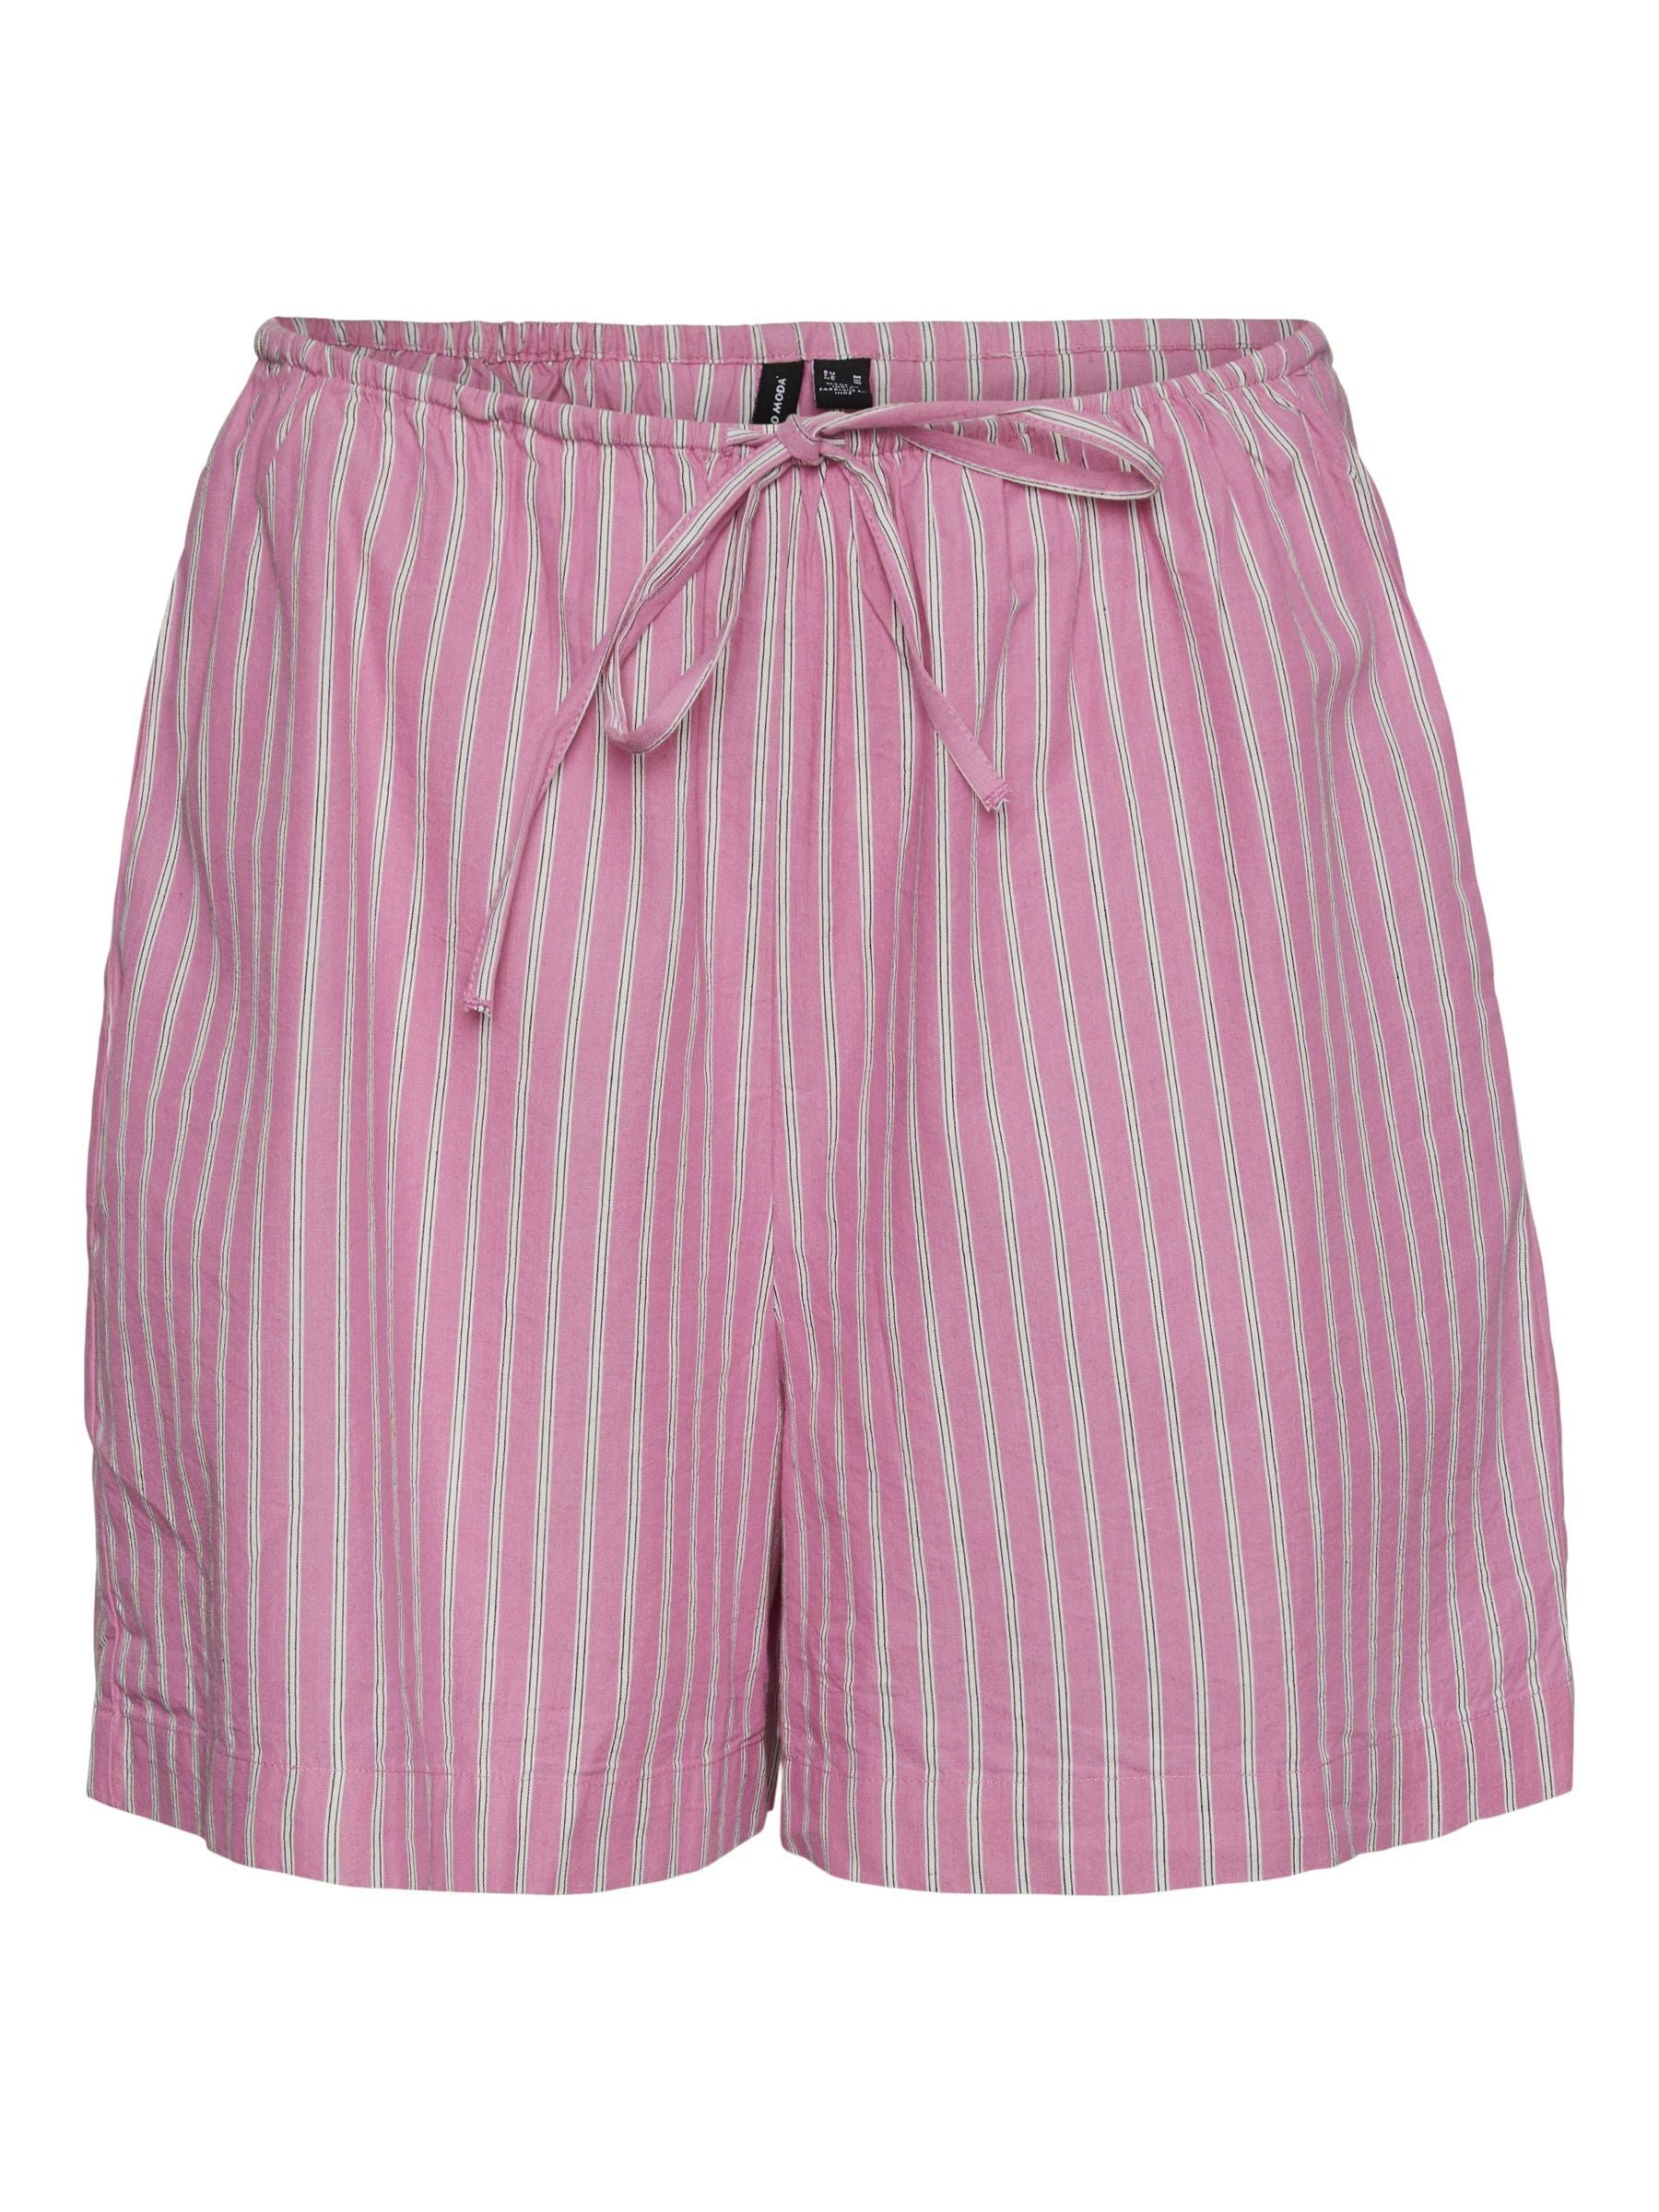 Gili shorts pink cosmos